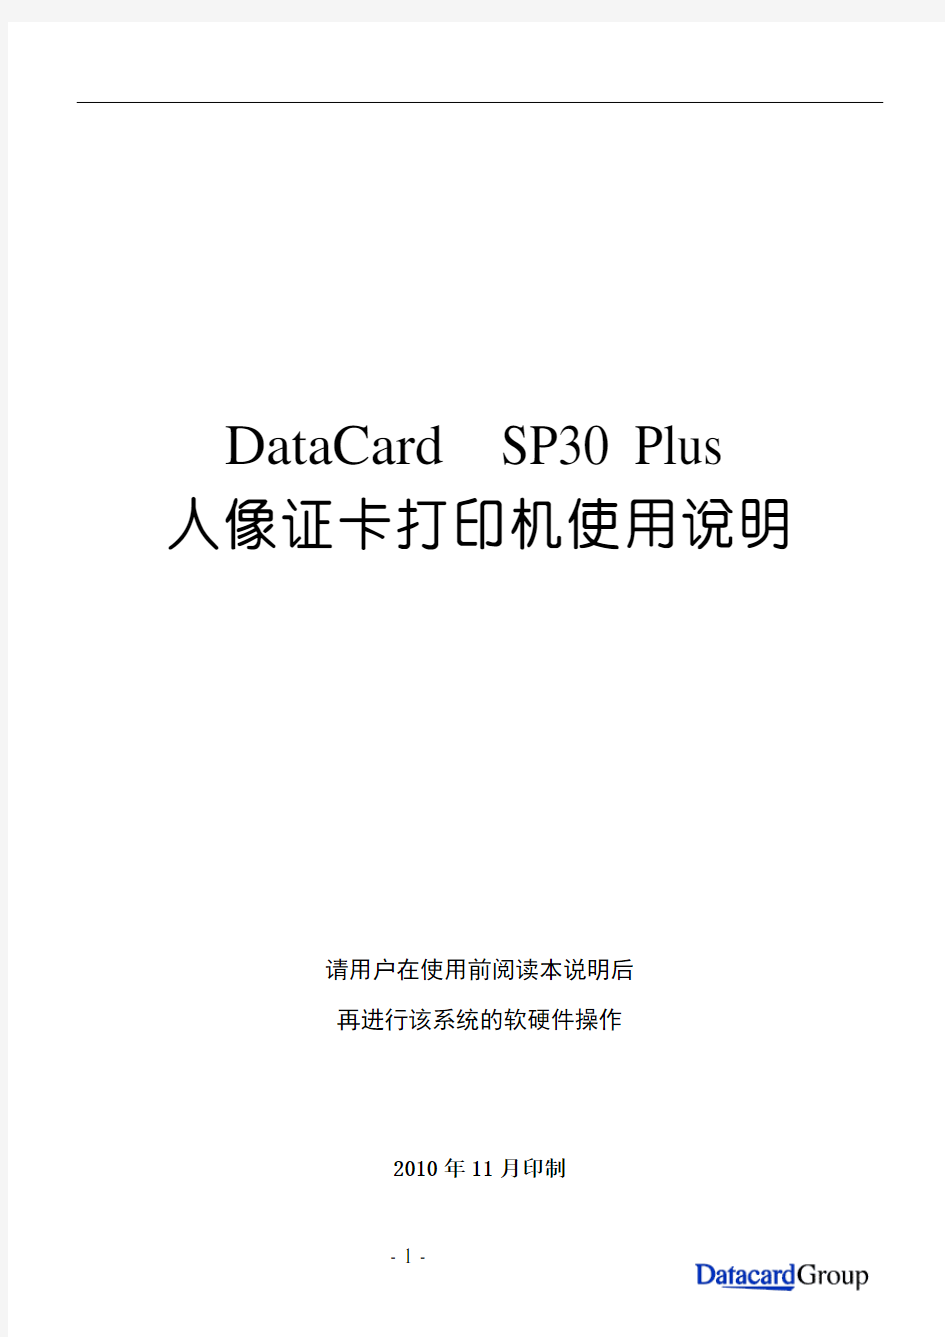 Datacard SP30 Plus卡机使用说明